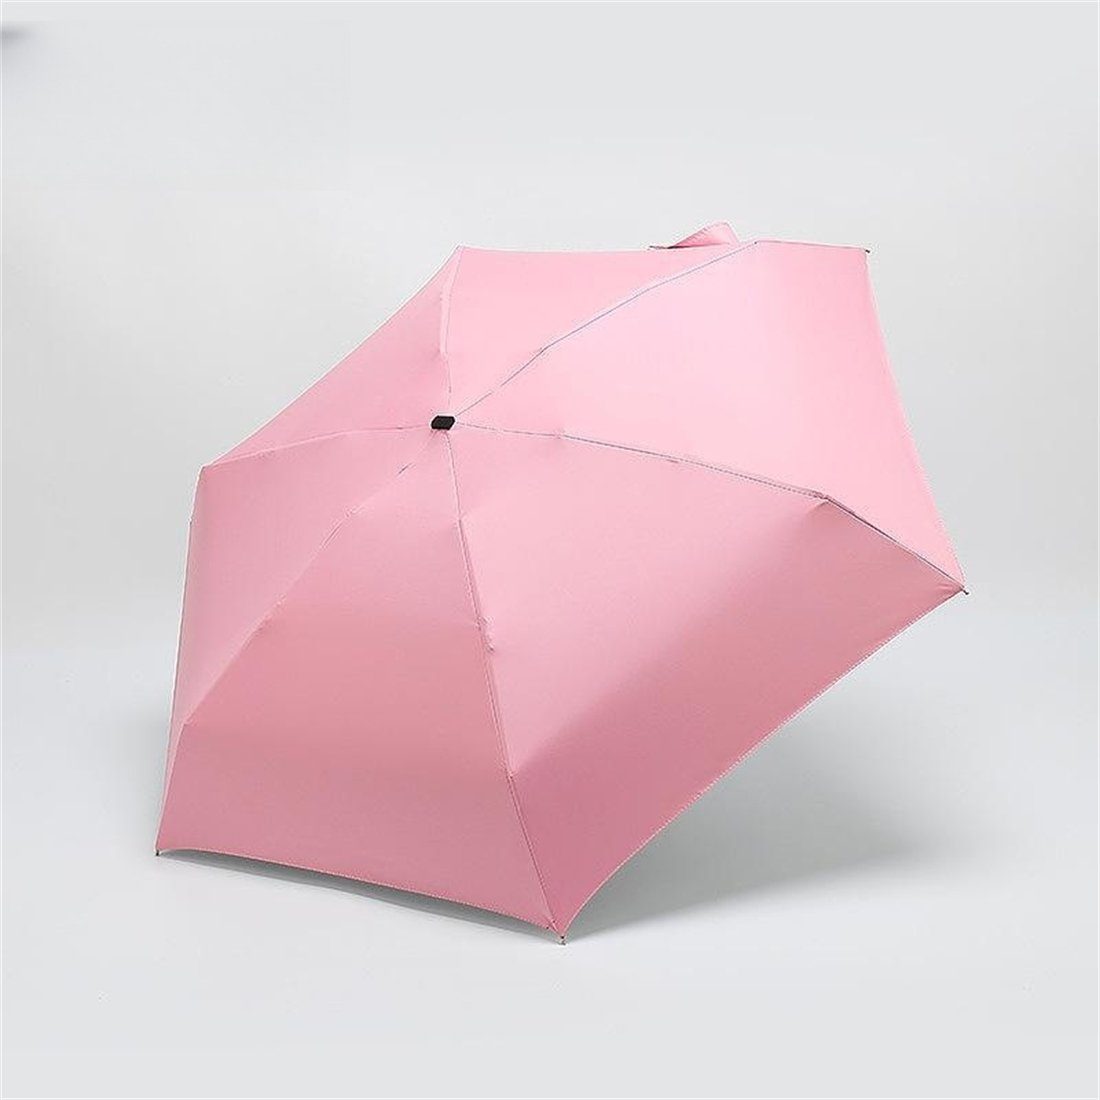 YOOdy~ sonnenschirm und Sonne small für unterwegs schützt Sonnenschutz, Rosa UV-Schutz klein winzig damen vor manual Taschenregenschirm Regen Taschenschirme für